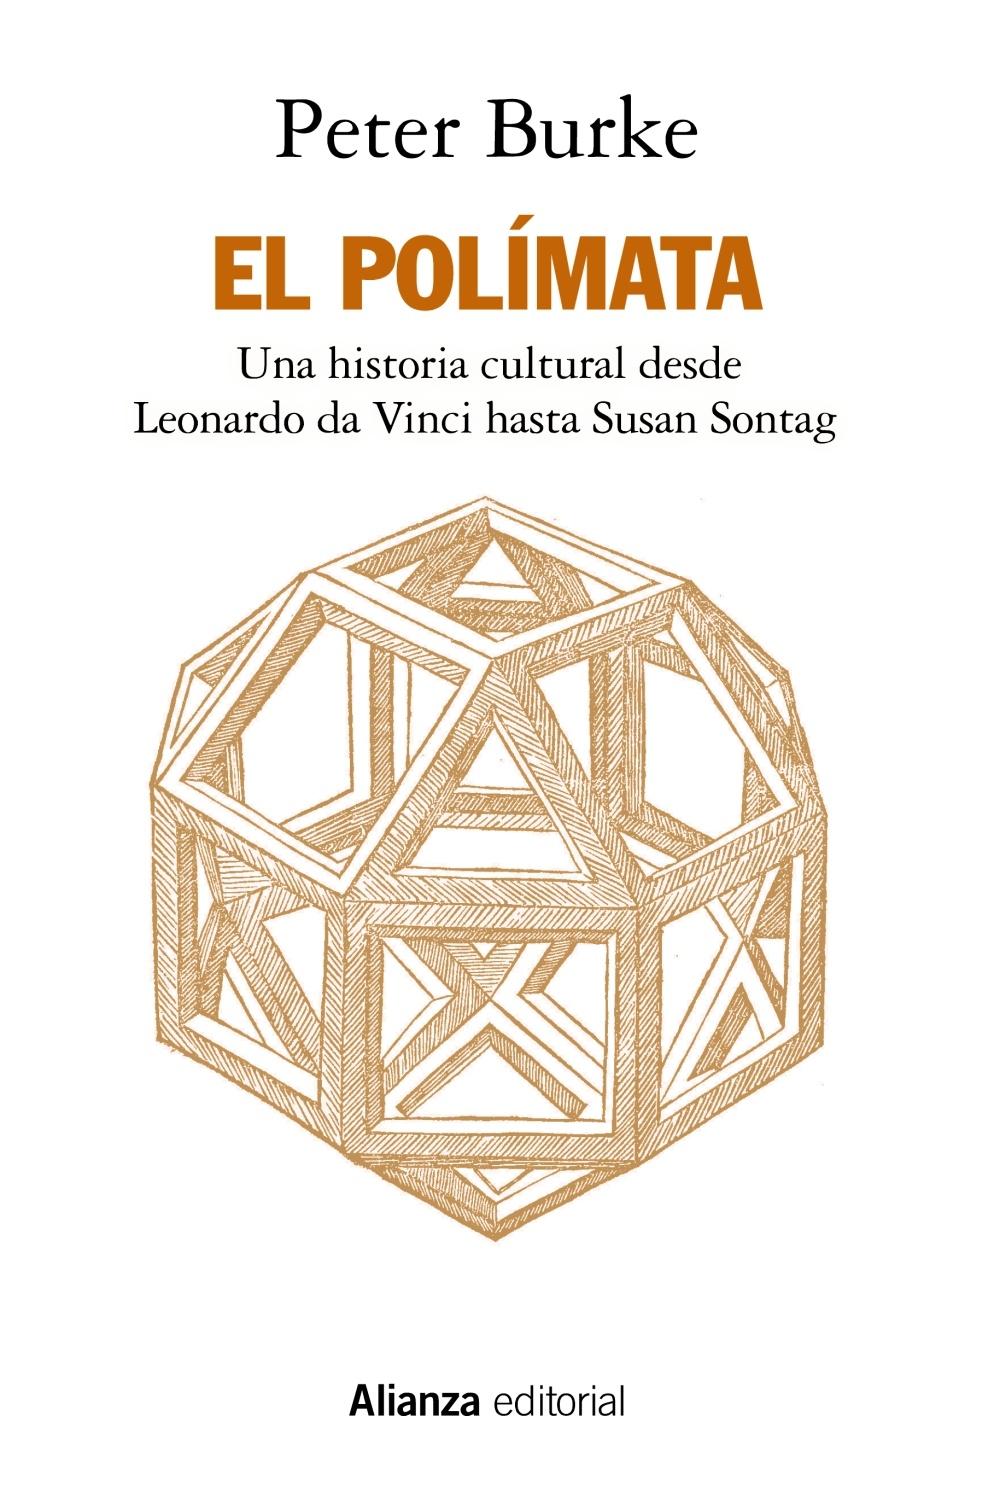 El polímata "Una historia cultural desde Leonardo da Vinci hasta Susan Sontag". 